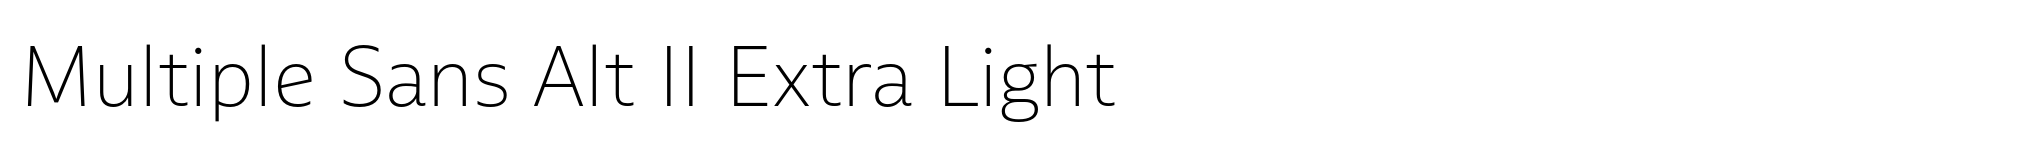 Multiple Sans Alt II Extra Light image